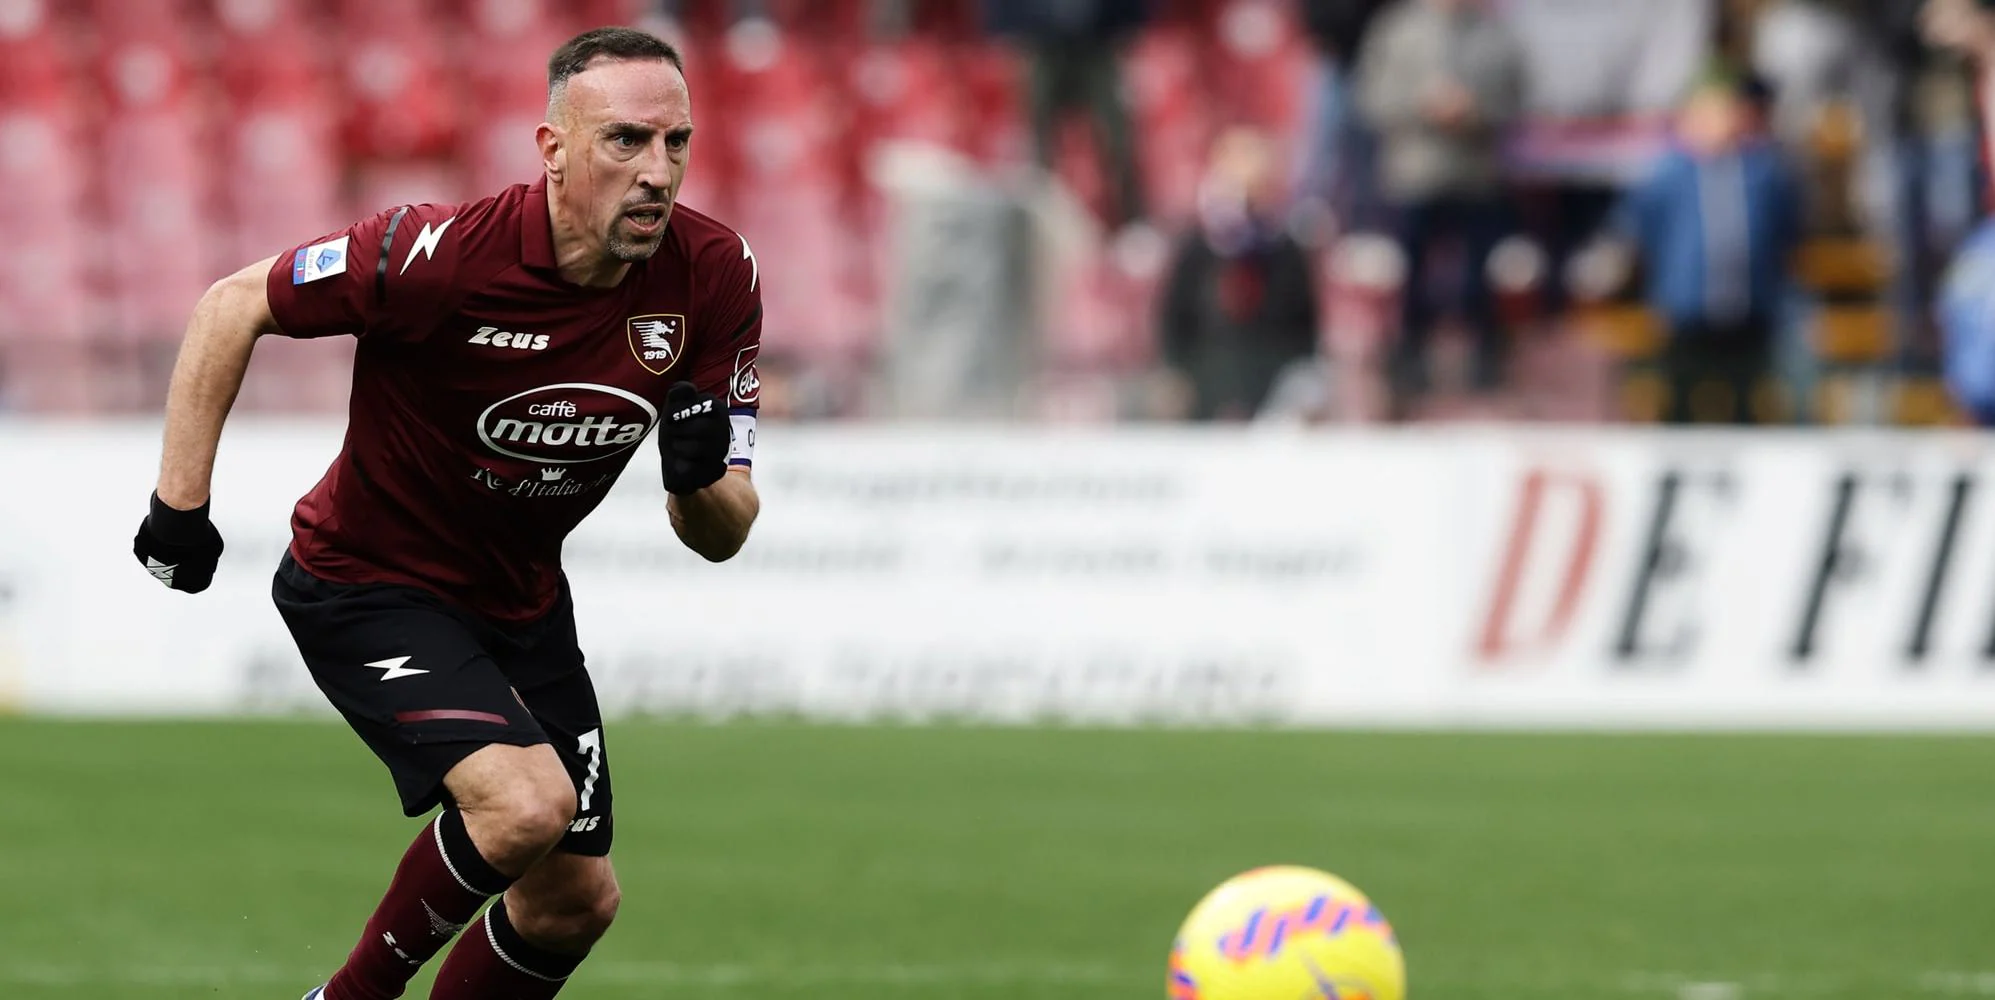 Corriere dello Sport – Salernitana, Ribery scatta subito. Simy cerca il riscatto